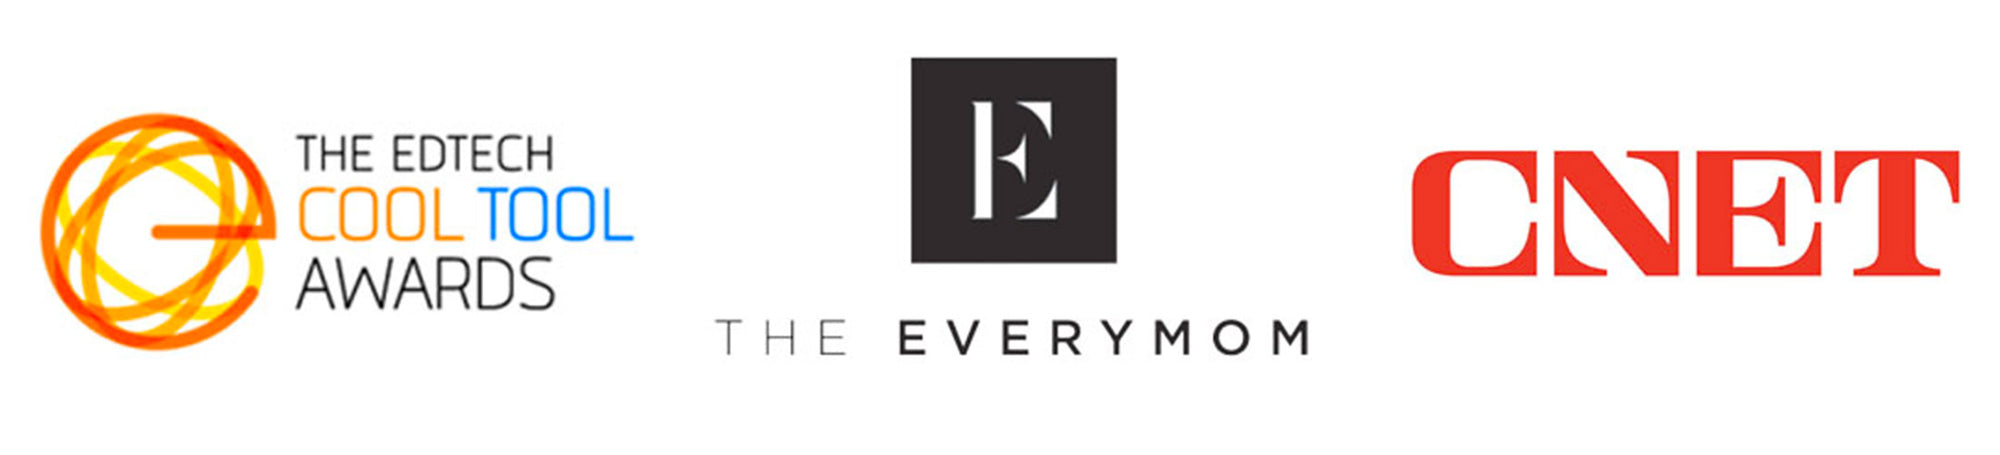 Logos - EdTech, Everymom, CNET